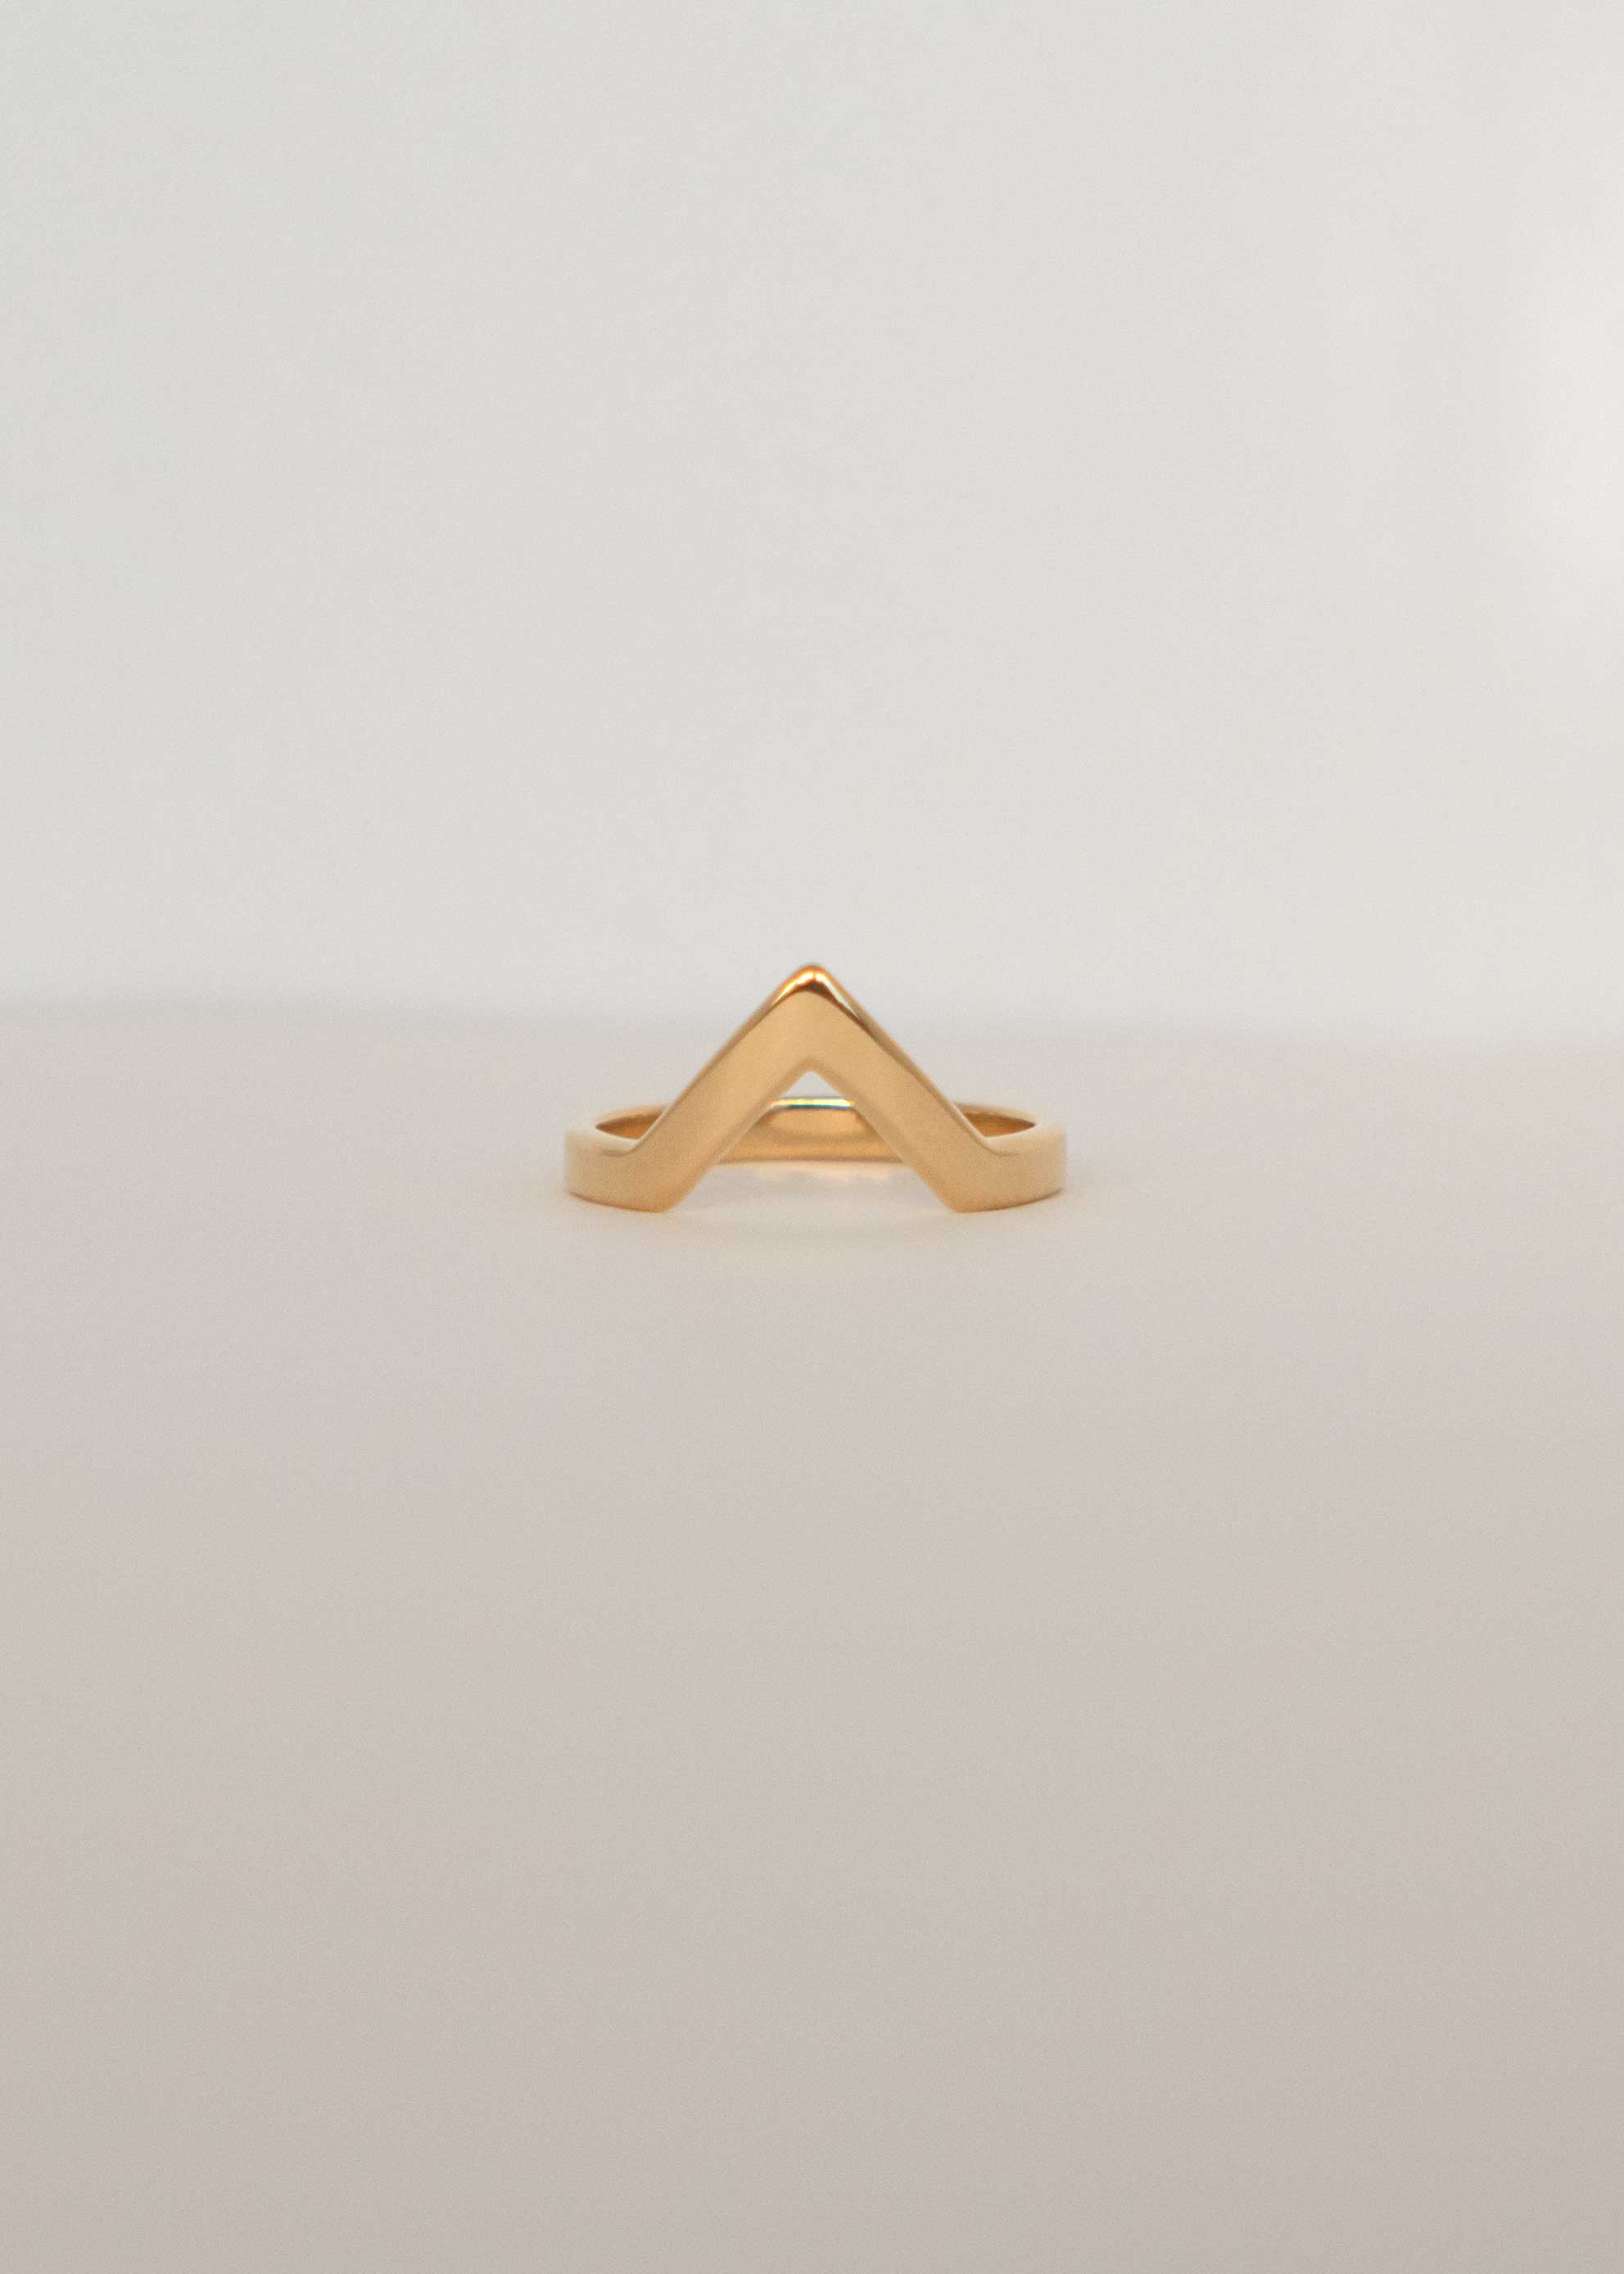 Peak Stacking Ring Gold Vermeil, Chevron Ring, Mountain Ring, wedding band 